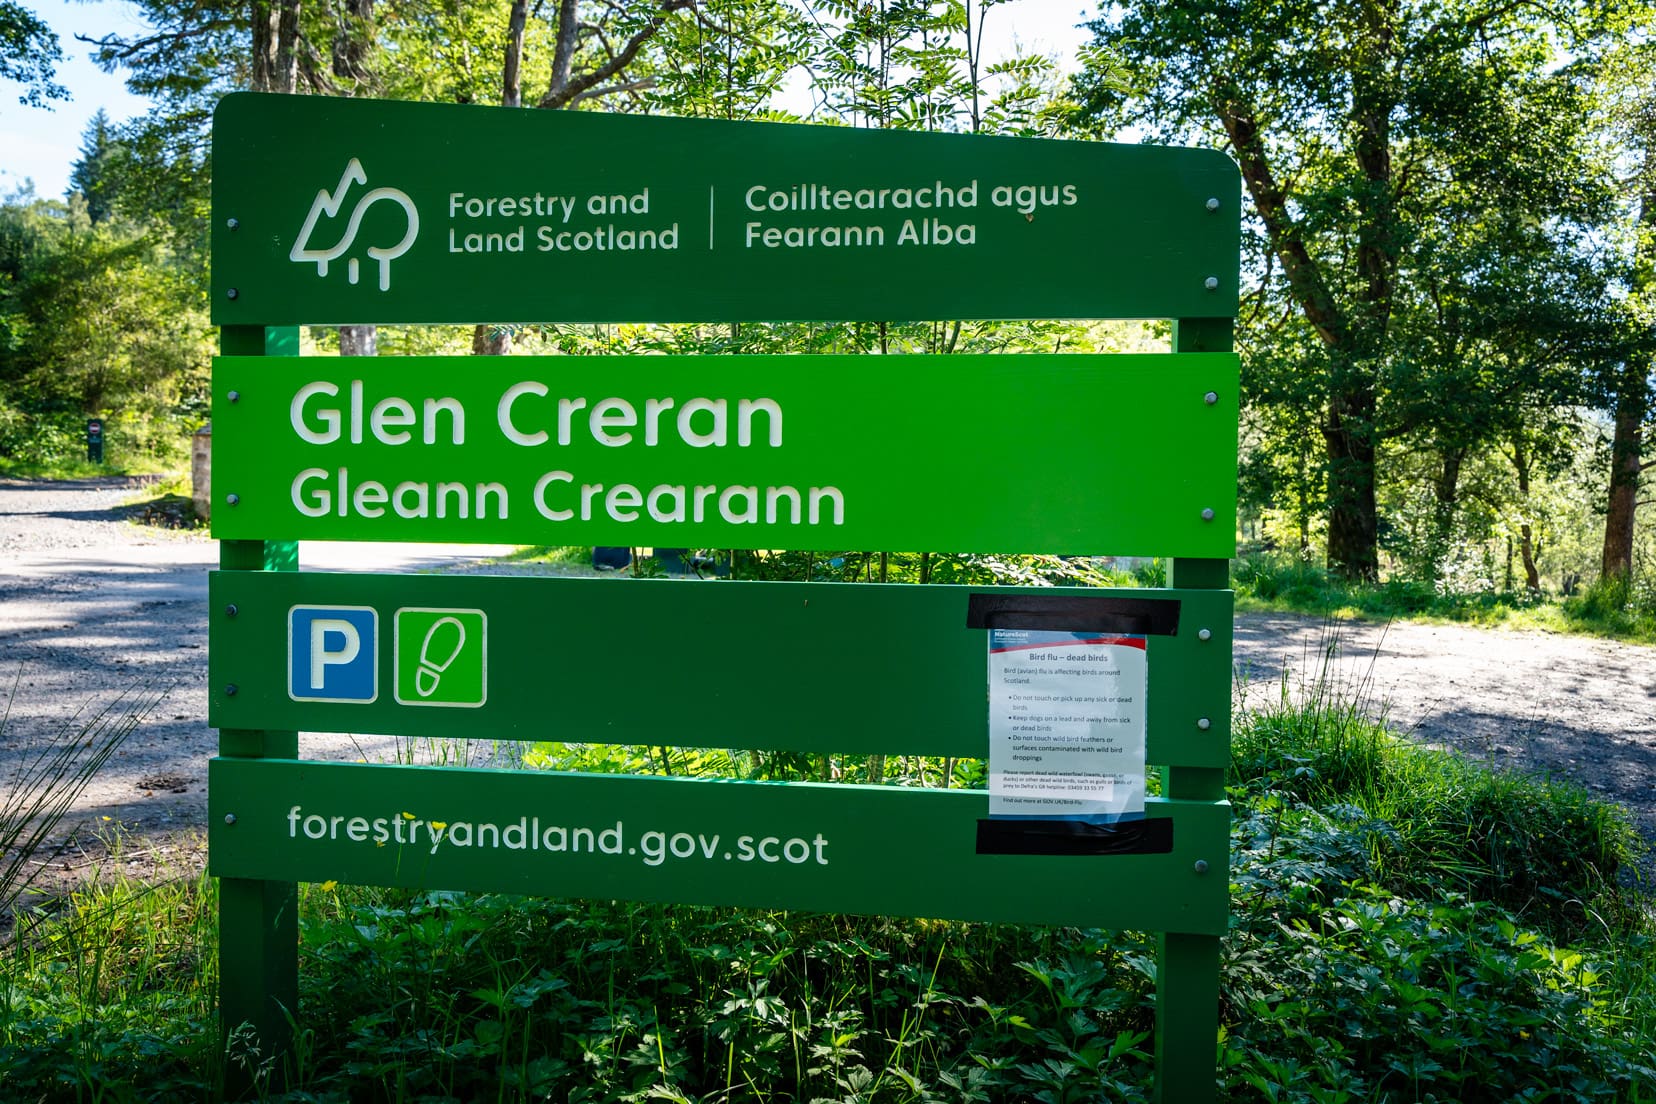 Glen Creran parking sign in a forest